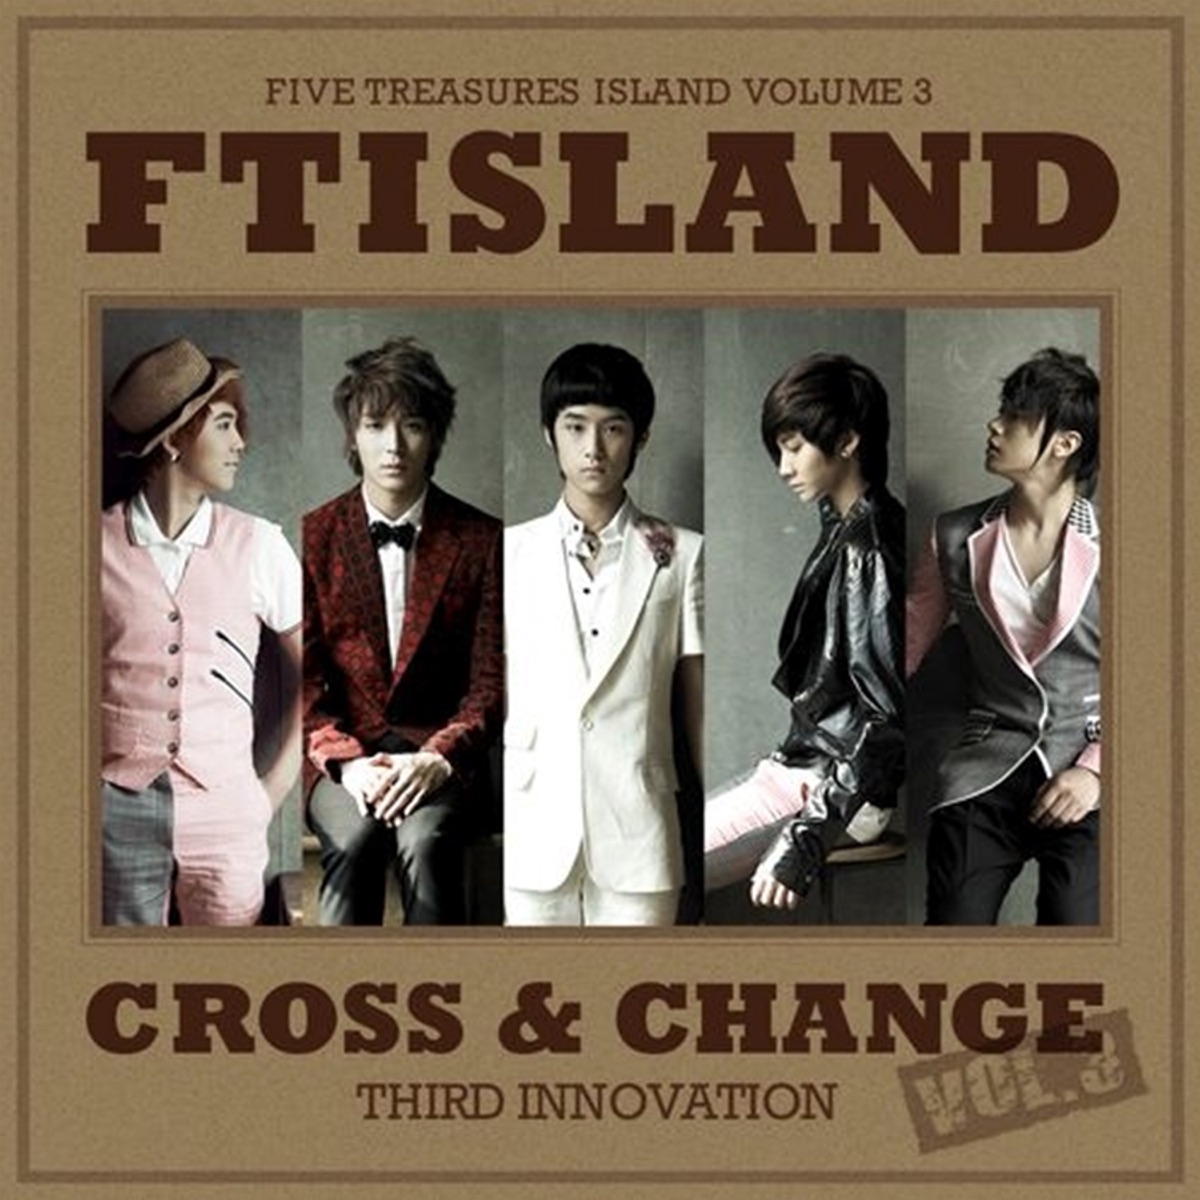 FTISLAND – Cross & Change